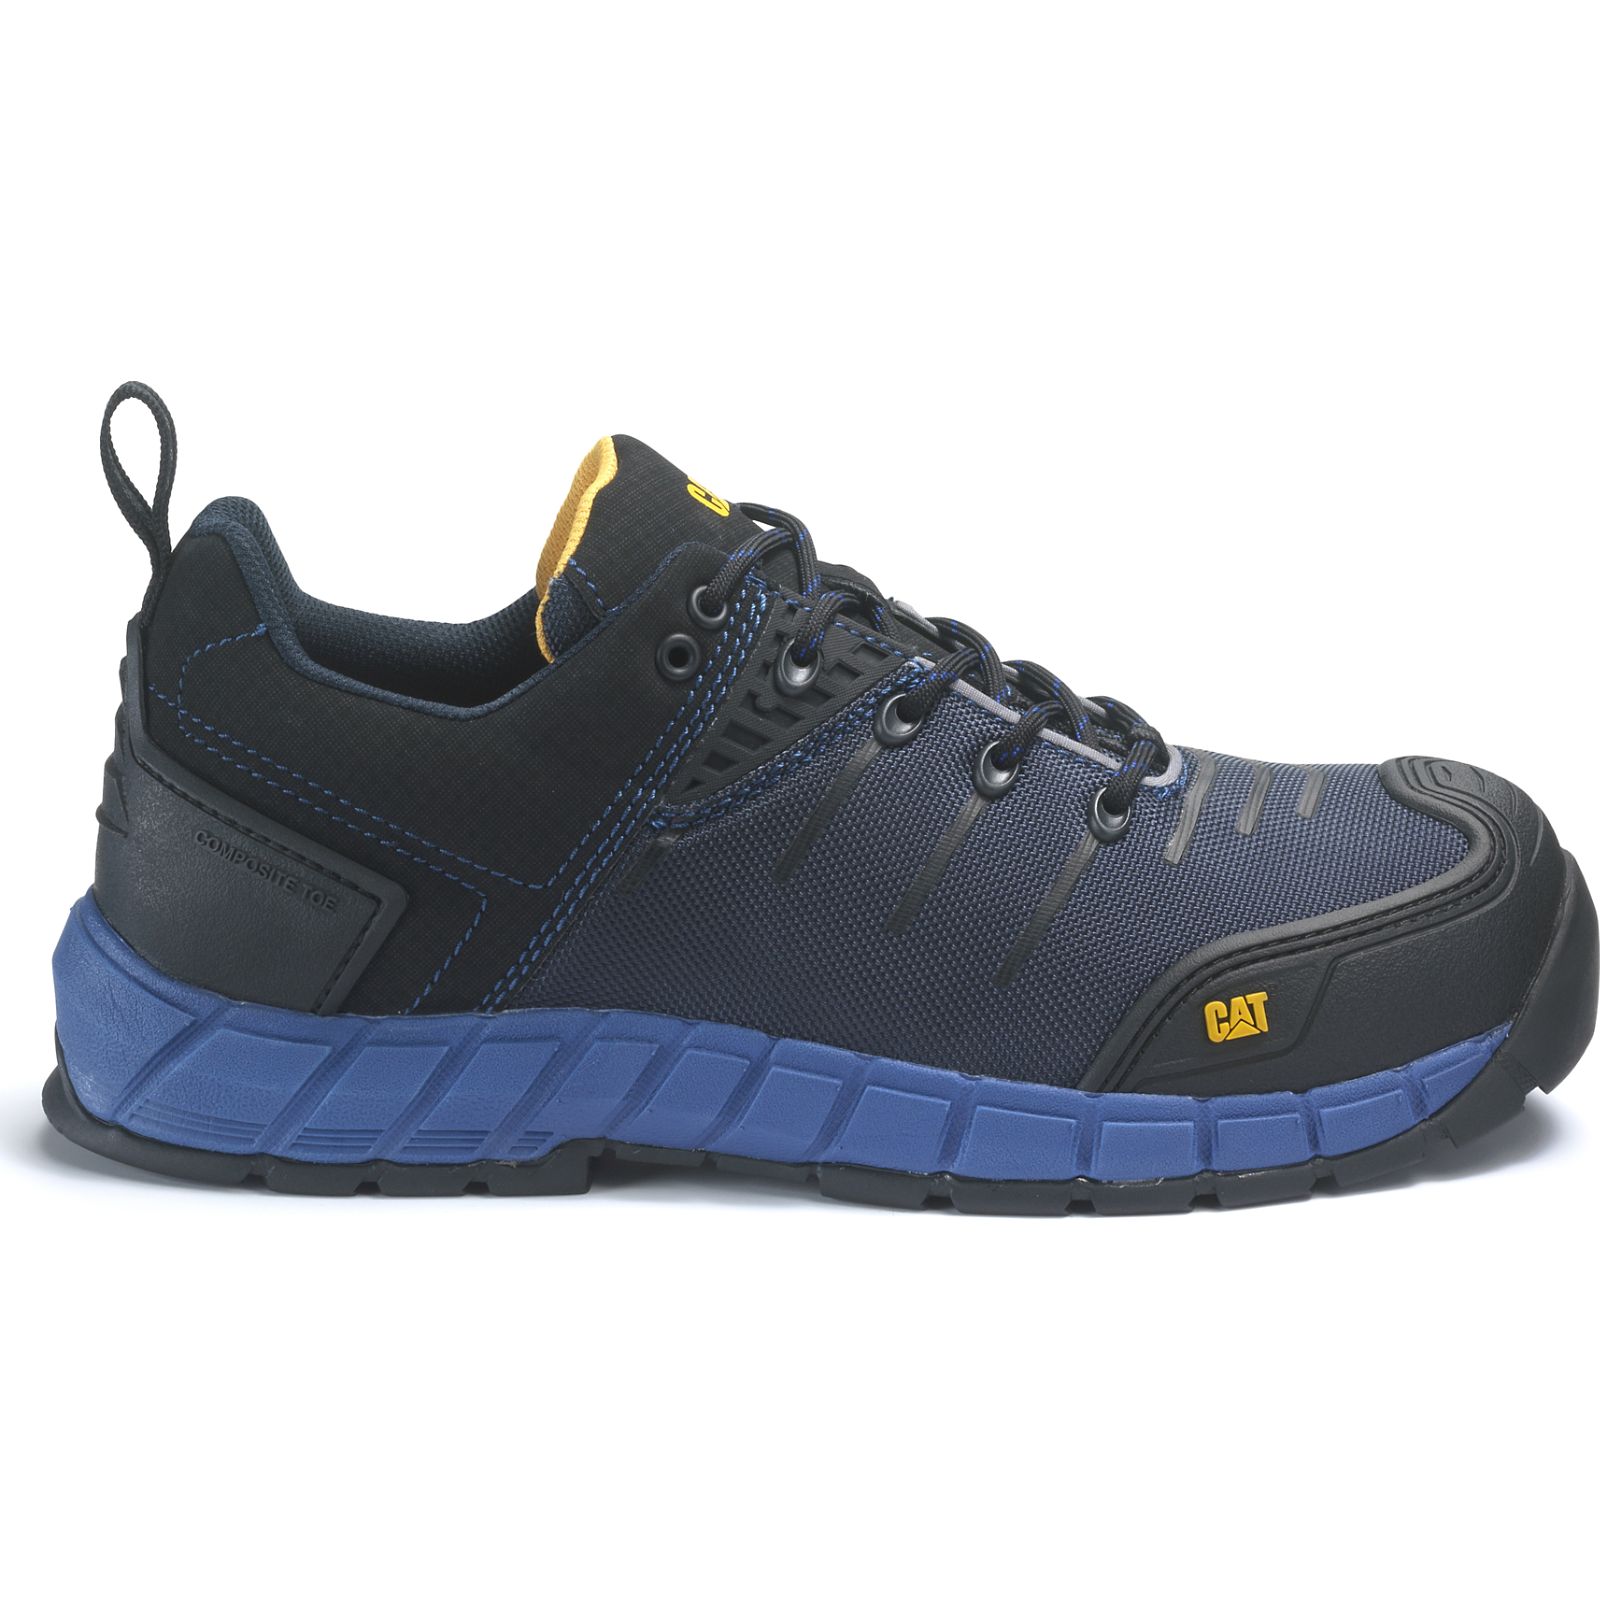 Caterpillar Shoes Sale - Caterpillar Byway Composite Toe S1p Hro Src Mens Work Shoes Blue (904512-EPD)